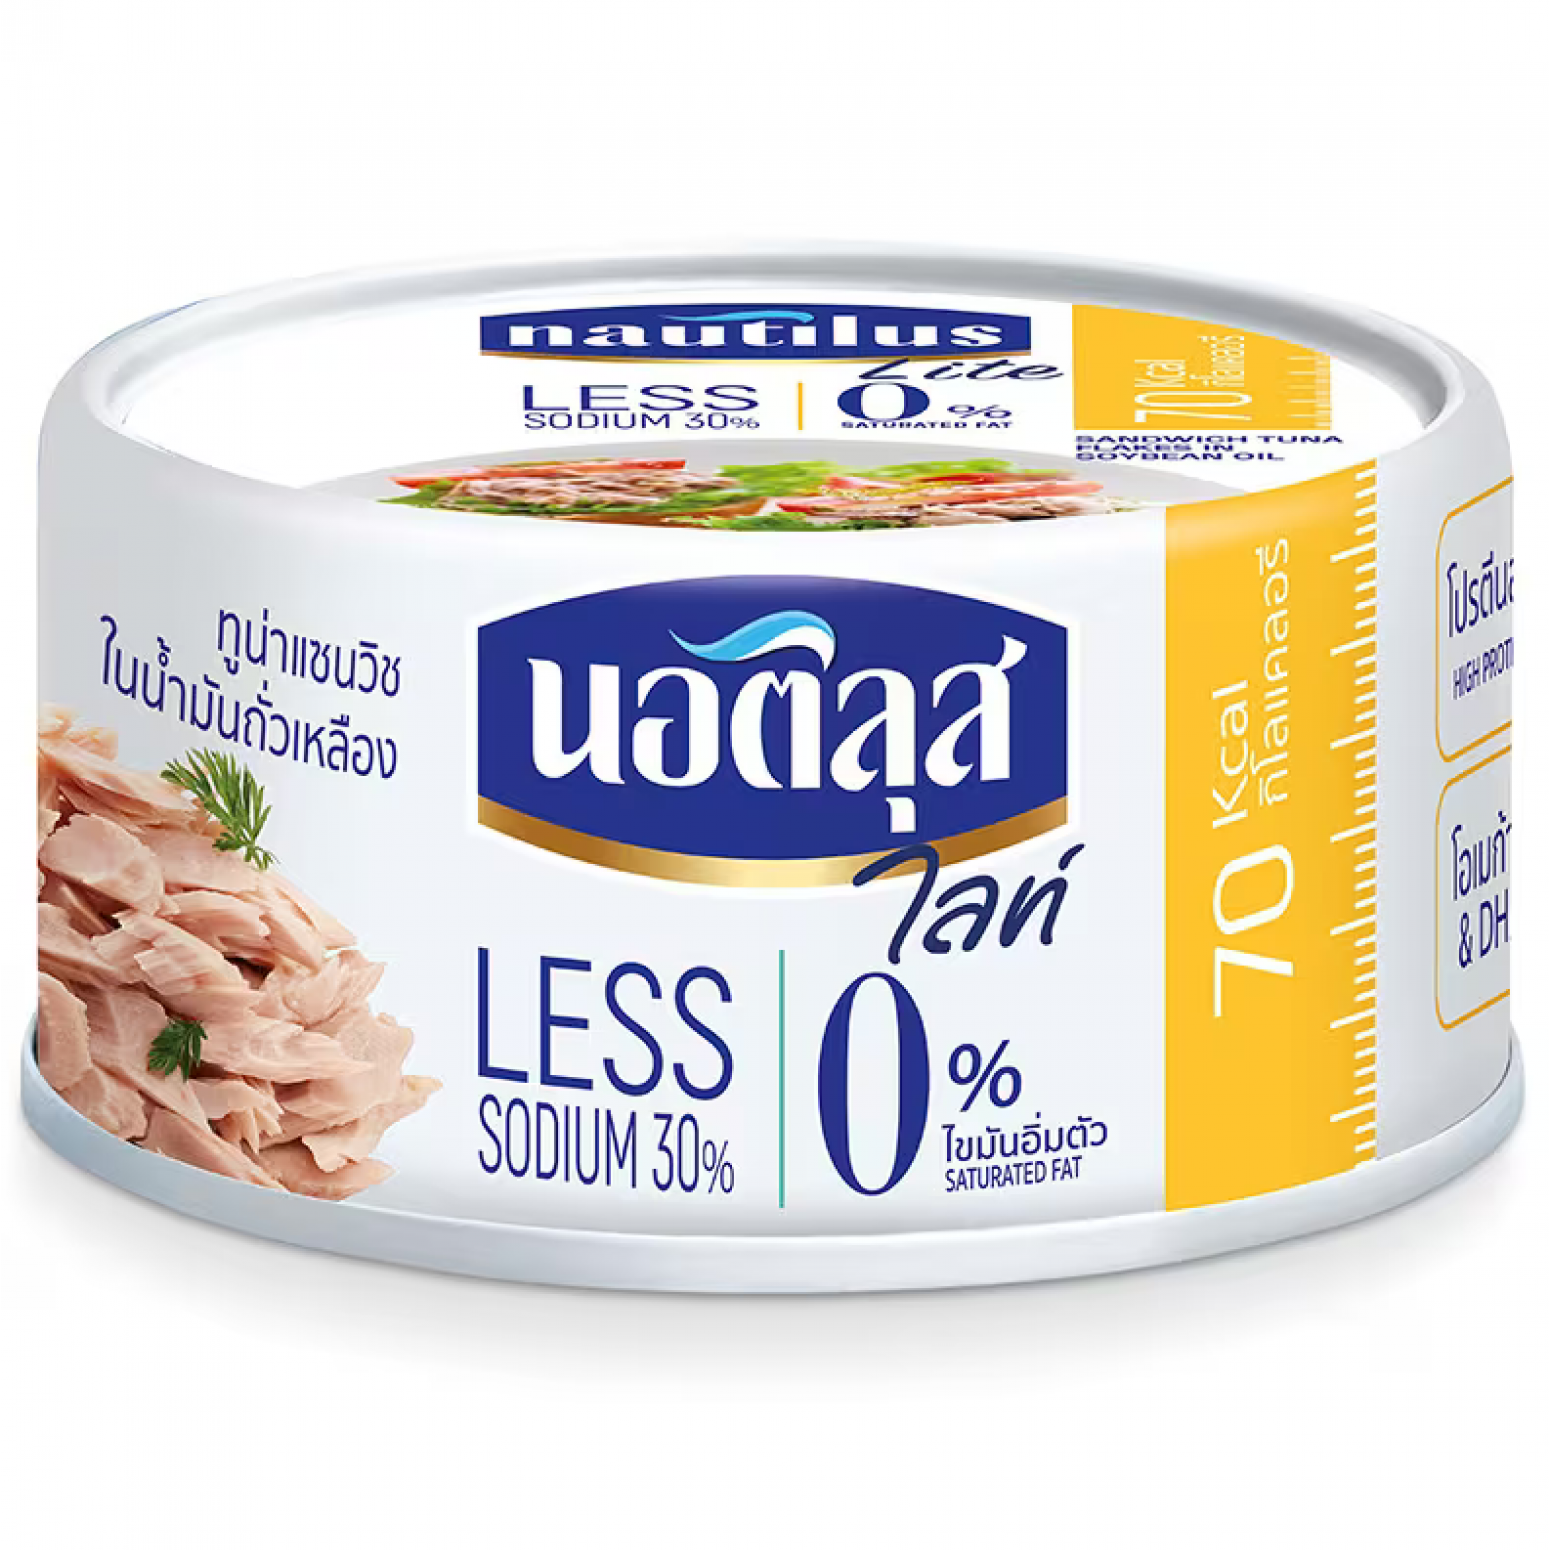 Nautilus Lite Sandwich Tuna Flakes in Soybean Oil 165G